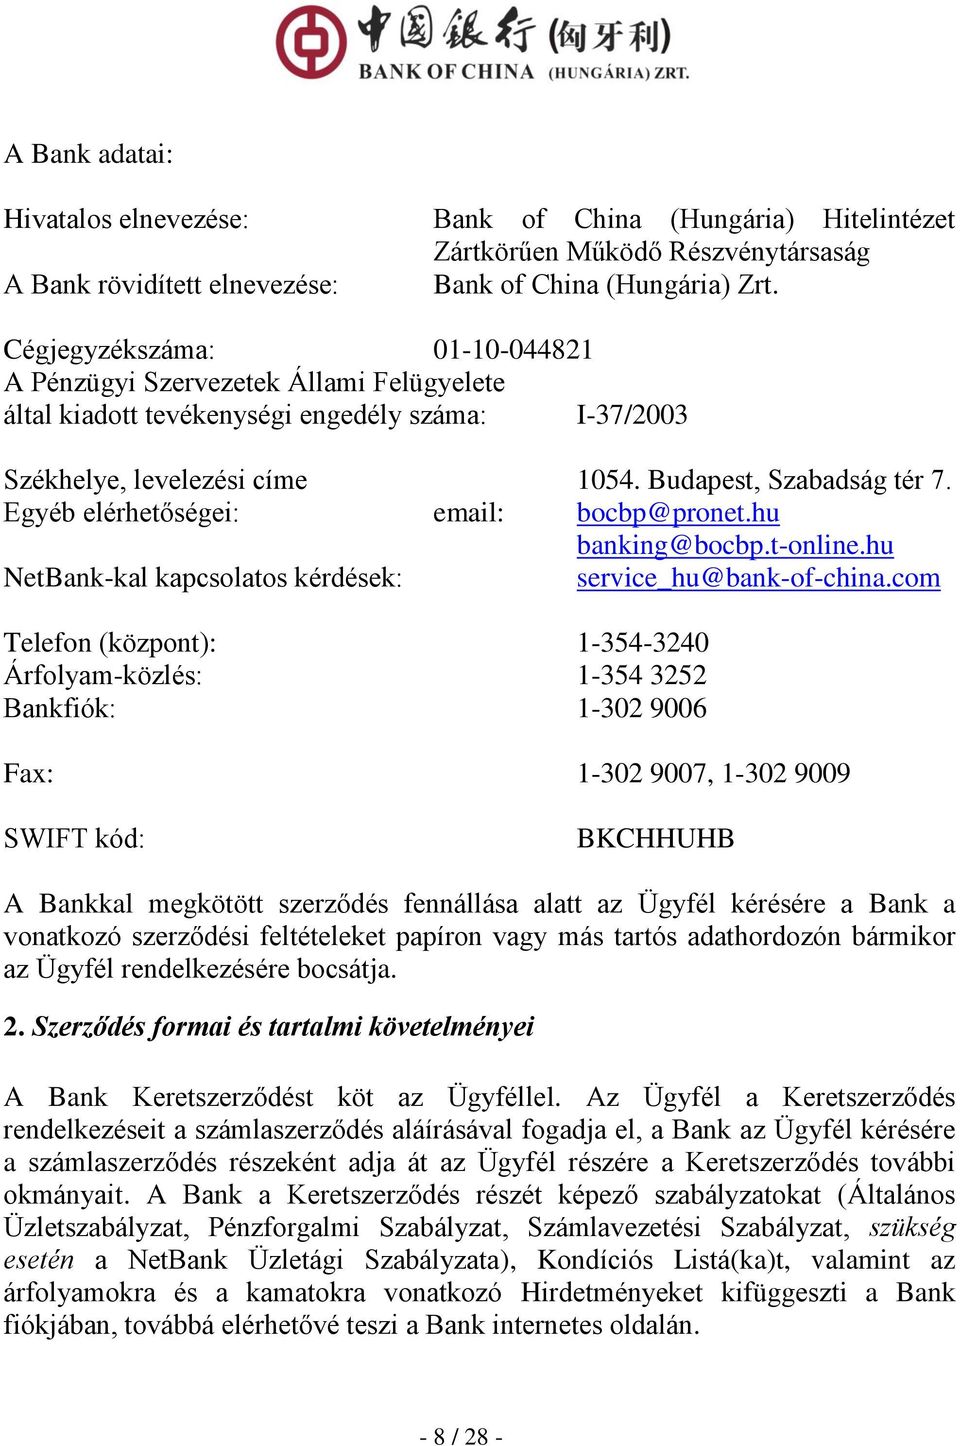 Egyéb elérhetőségei: email: bocbp@pronet.hu banking@bocbp.t-online.hu NetBank-kal kapcsolatos kérdések: service_hu@bank-of-china.